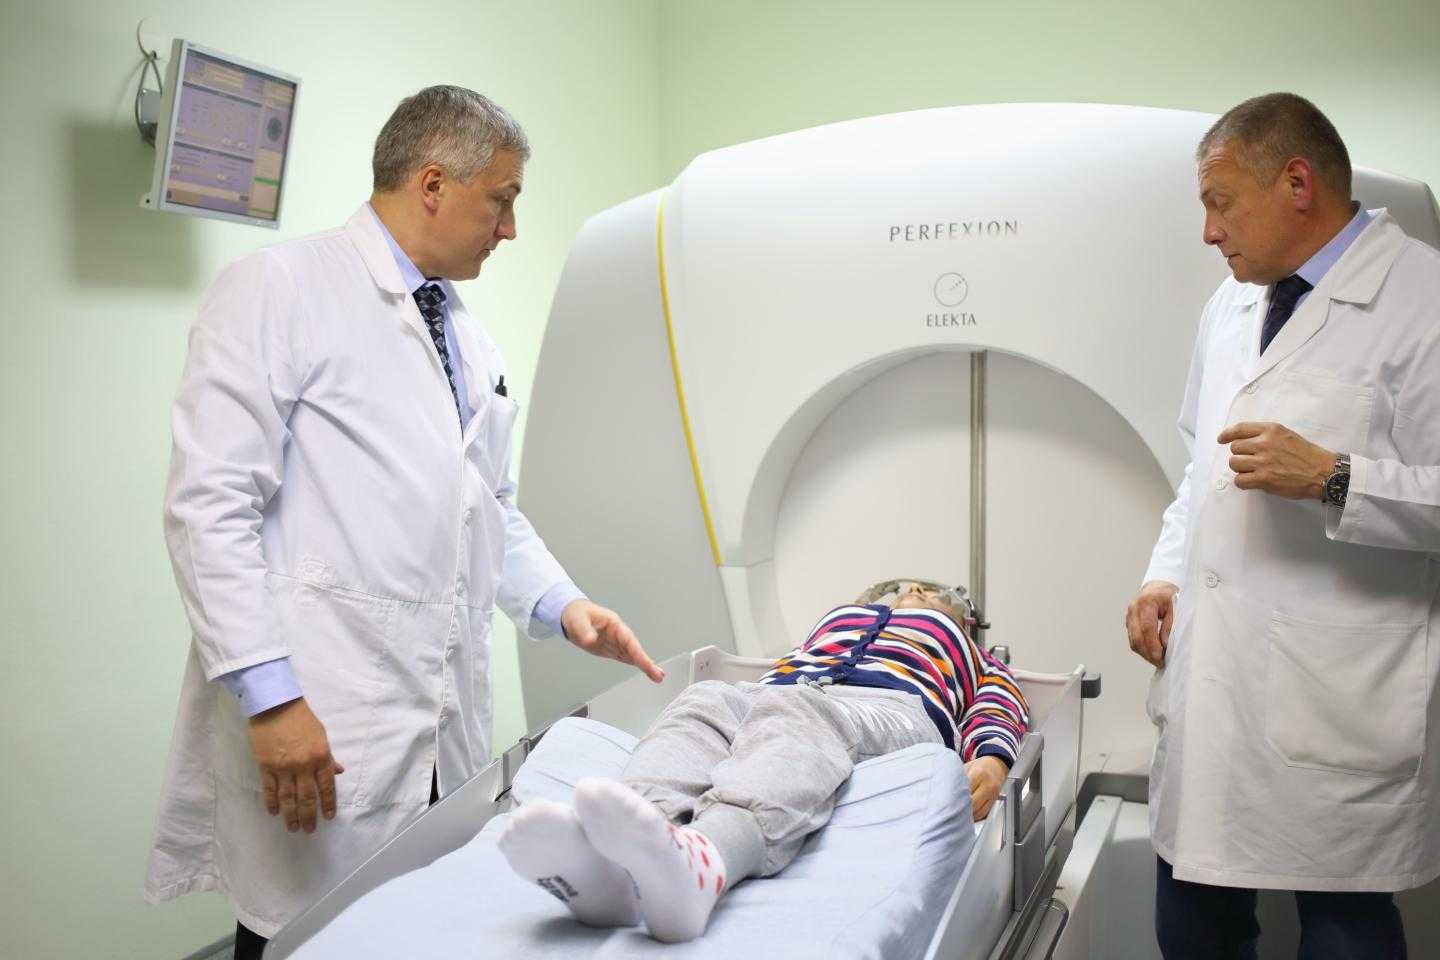 двое врачей помещают девушку в аппарат для лечения